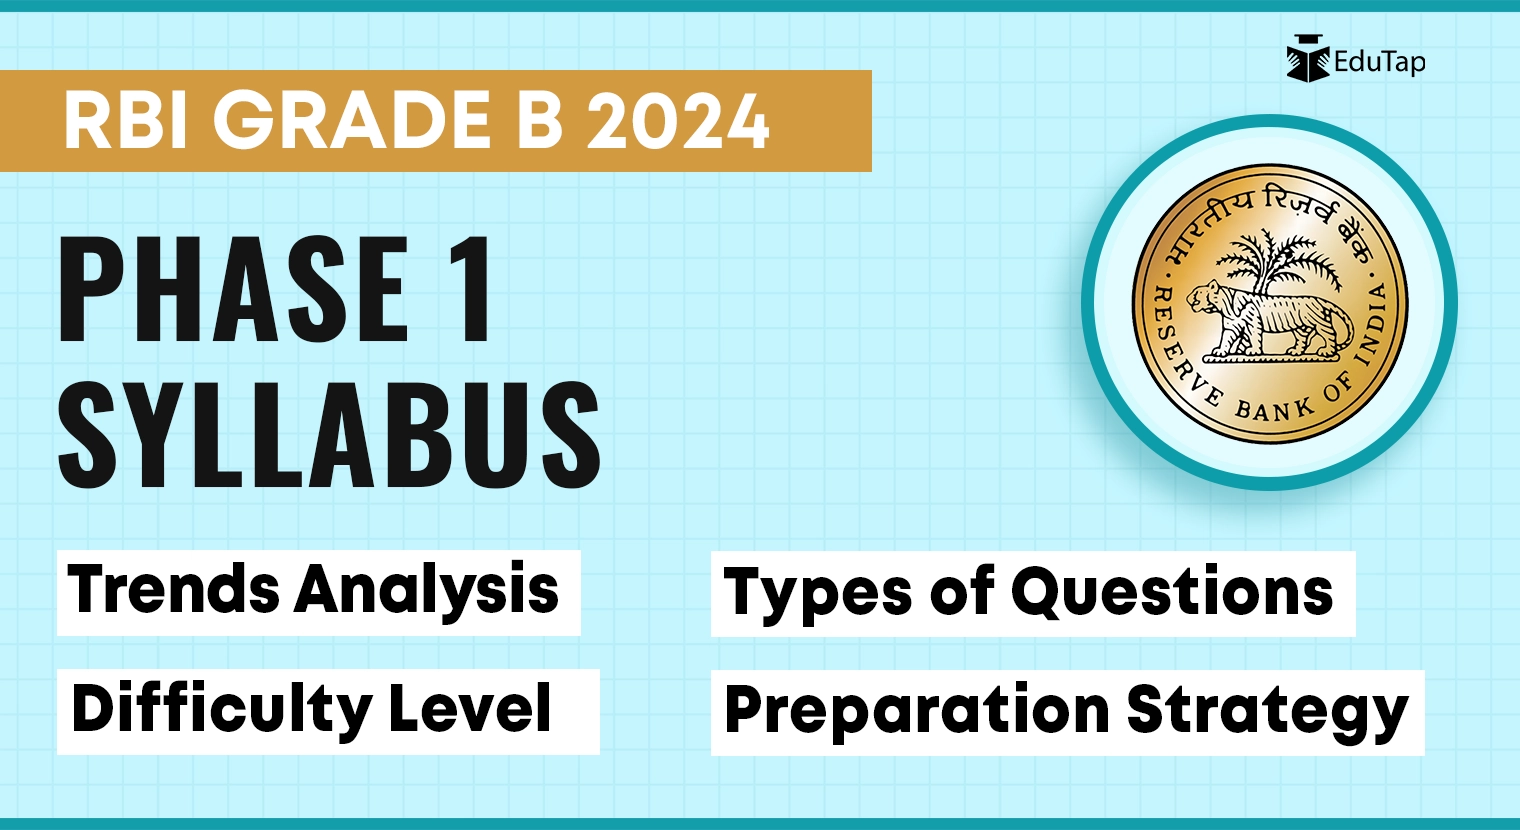 RBI Grade B Phase 1 syllabus